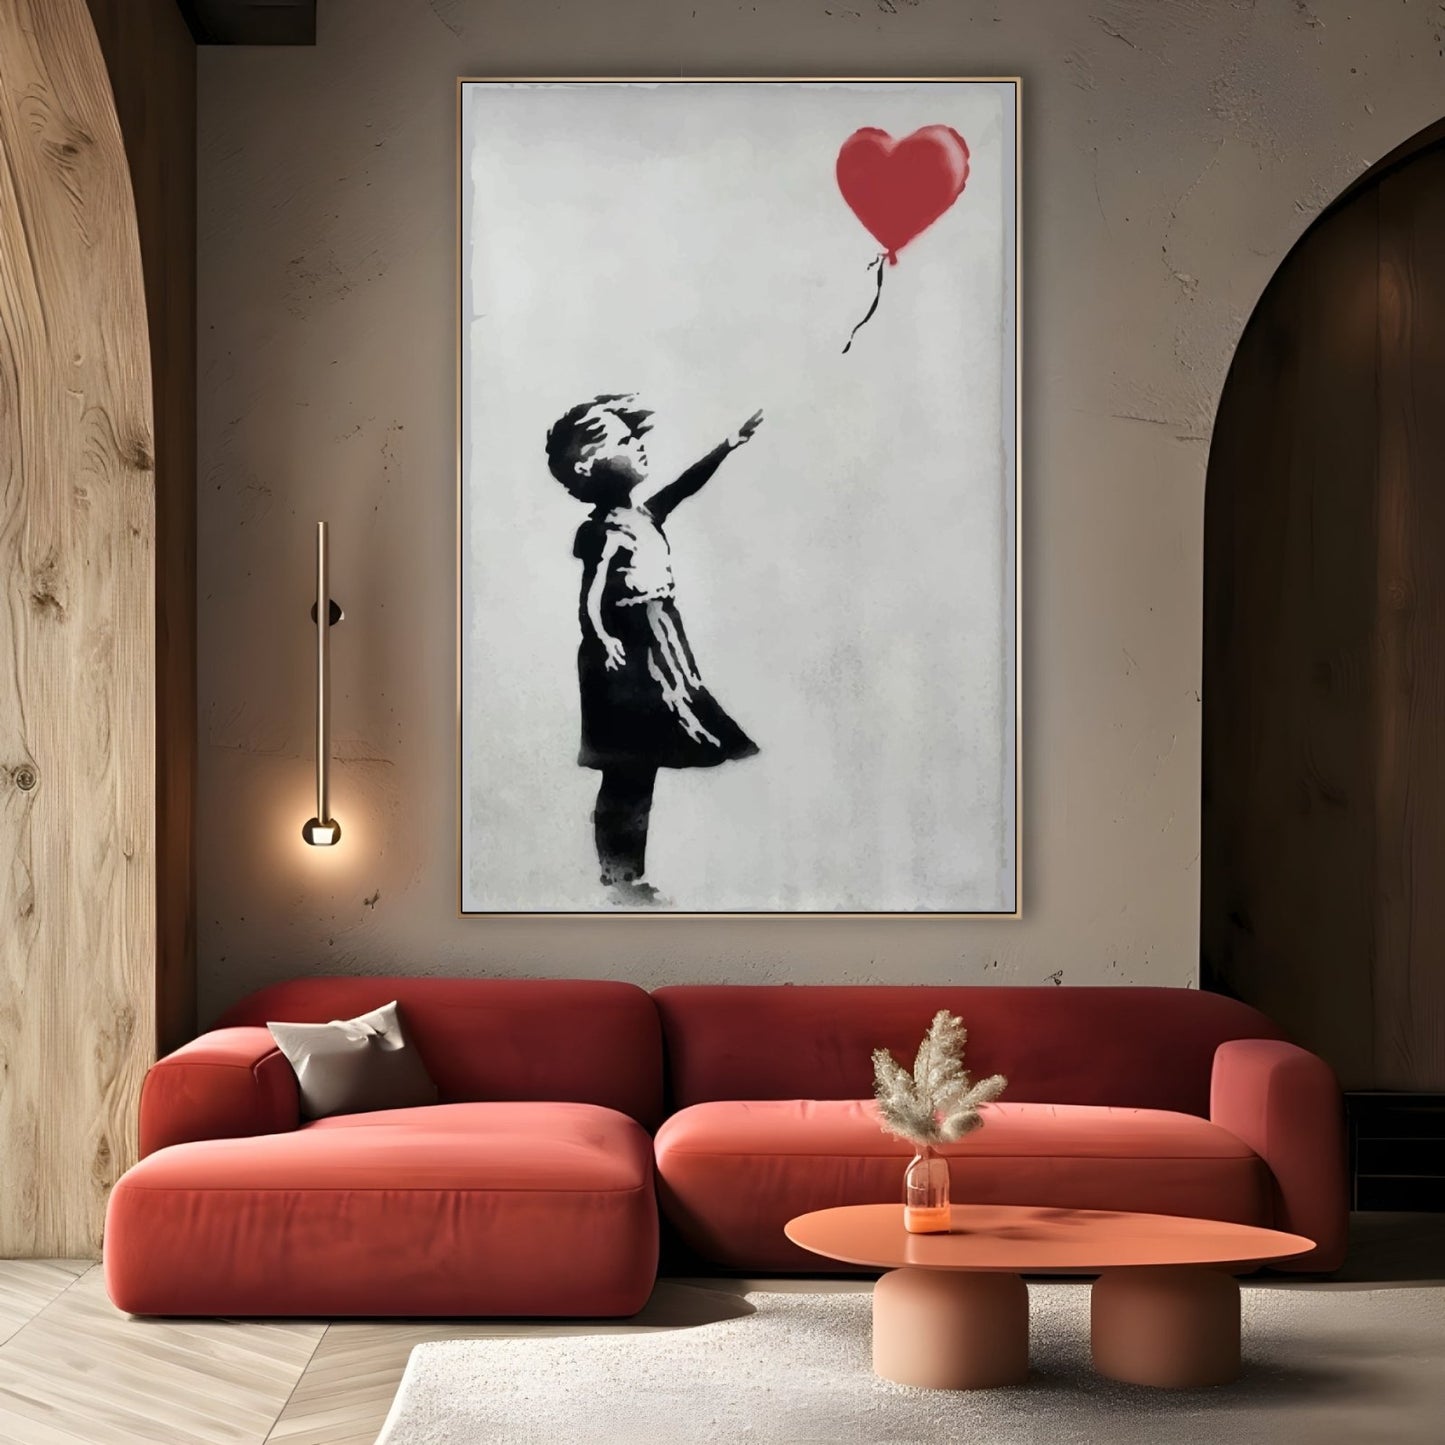 Ballonmeisje, Banksy